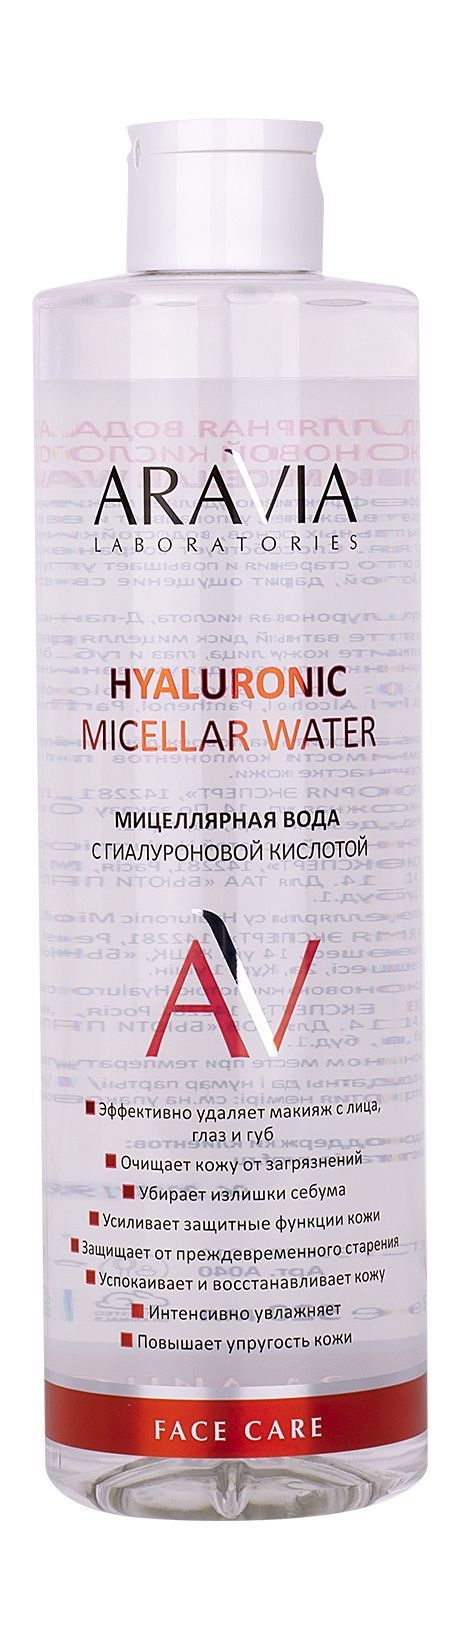 Мицеллярная вода аравия. Мицеллярная вода с гиалуроновой кислотой Aravia Laboratories Hyaluronic. Aravia мицеллярная вода с гиалуроновой кислотой. Аравия мицеллярная вода с гиалуроновой кислотой. Мицеллярная вода с кислотами.